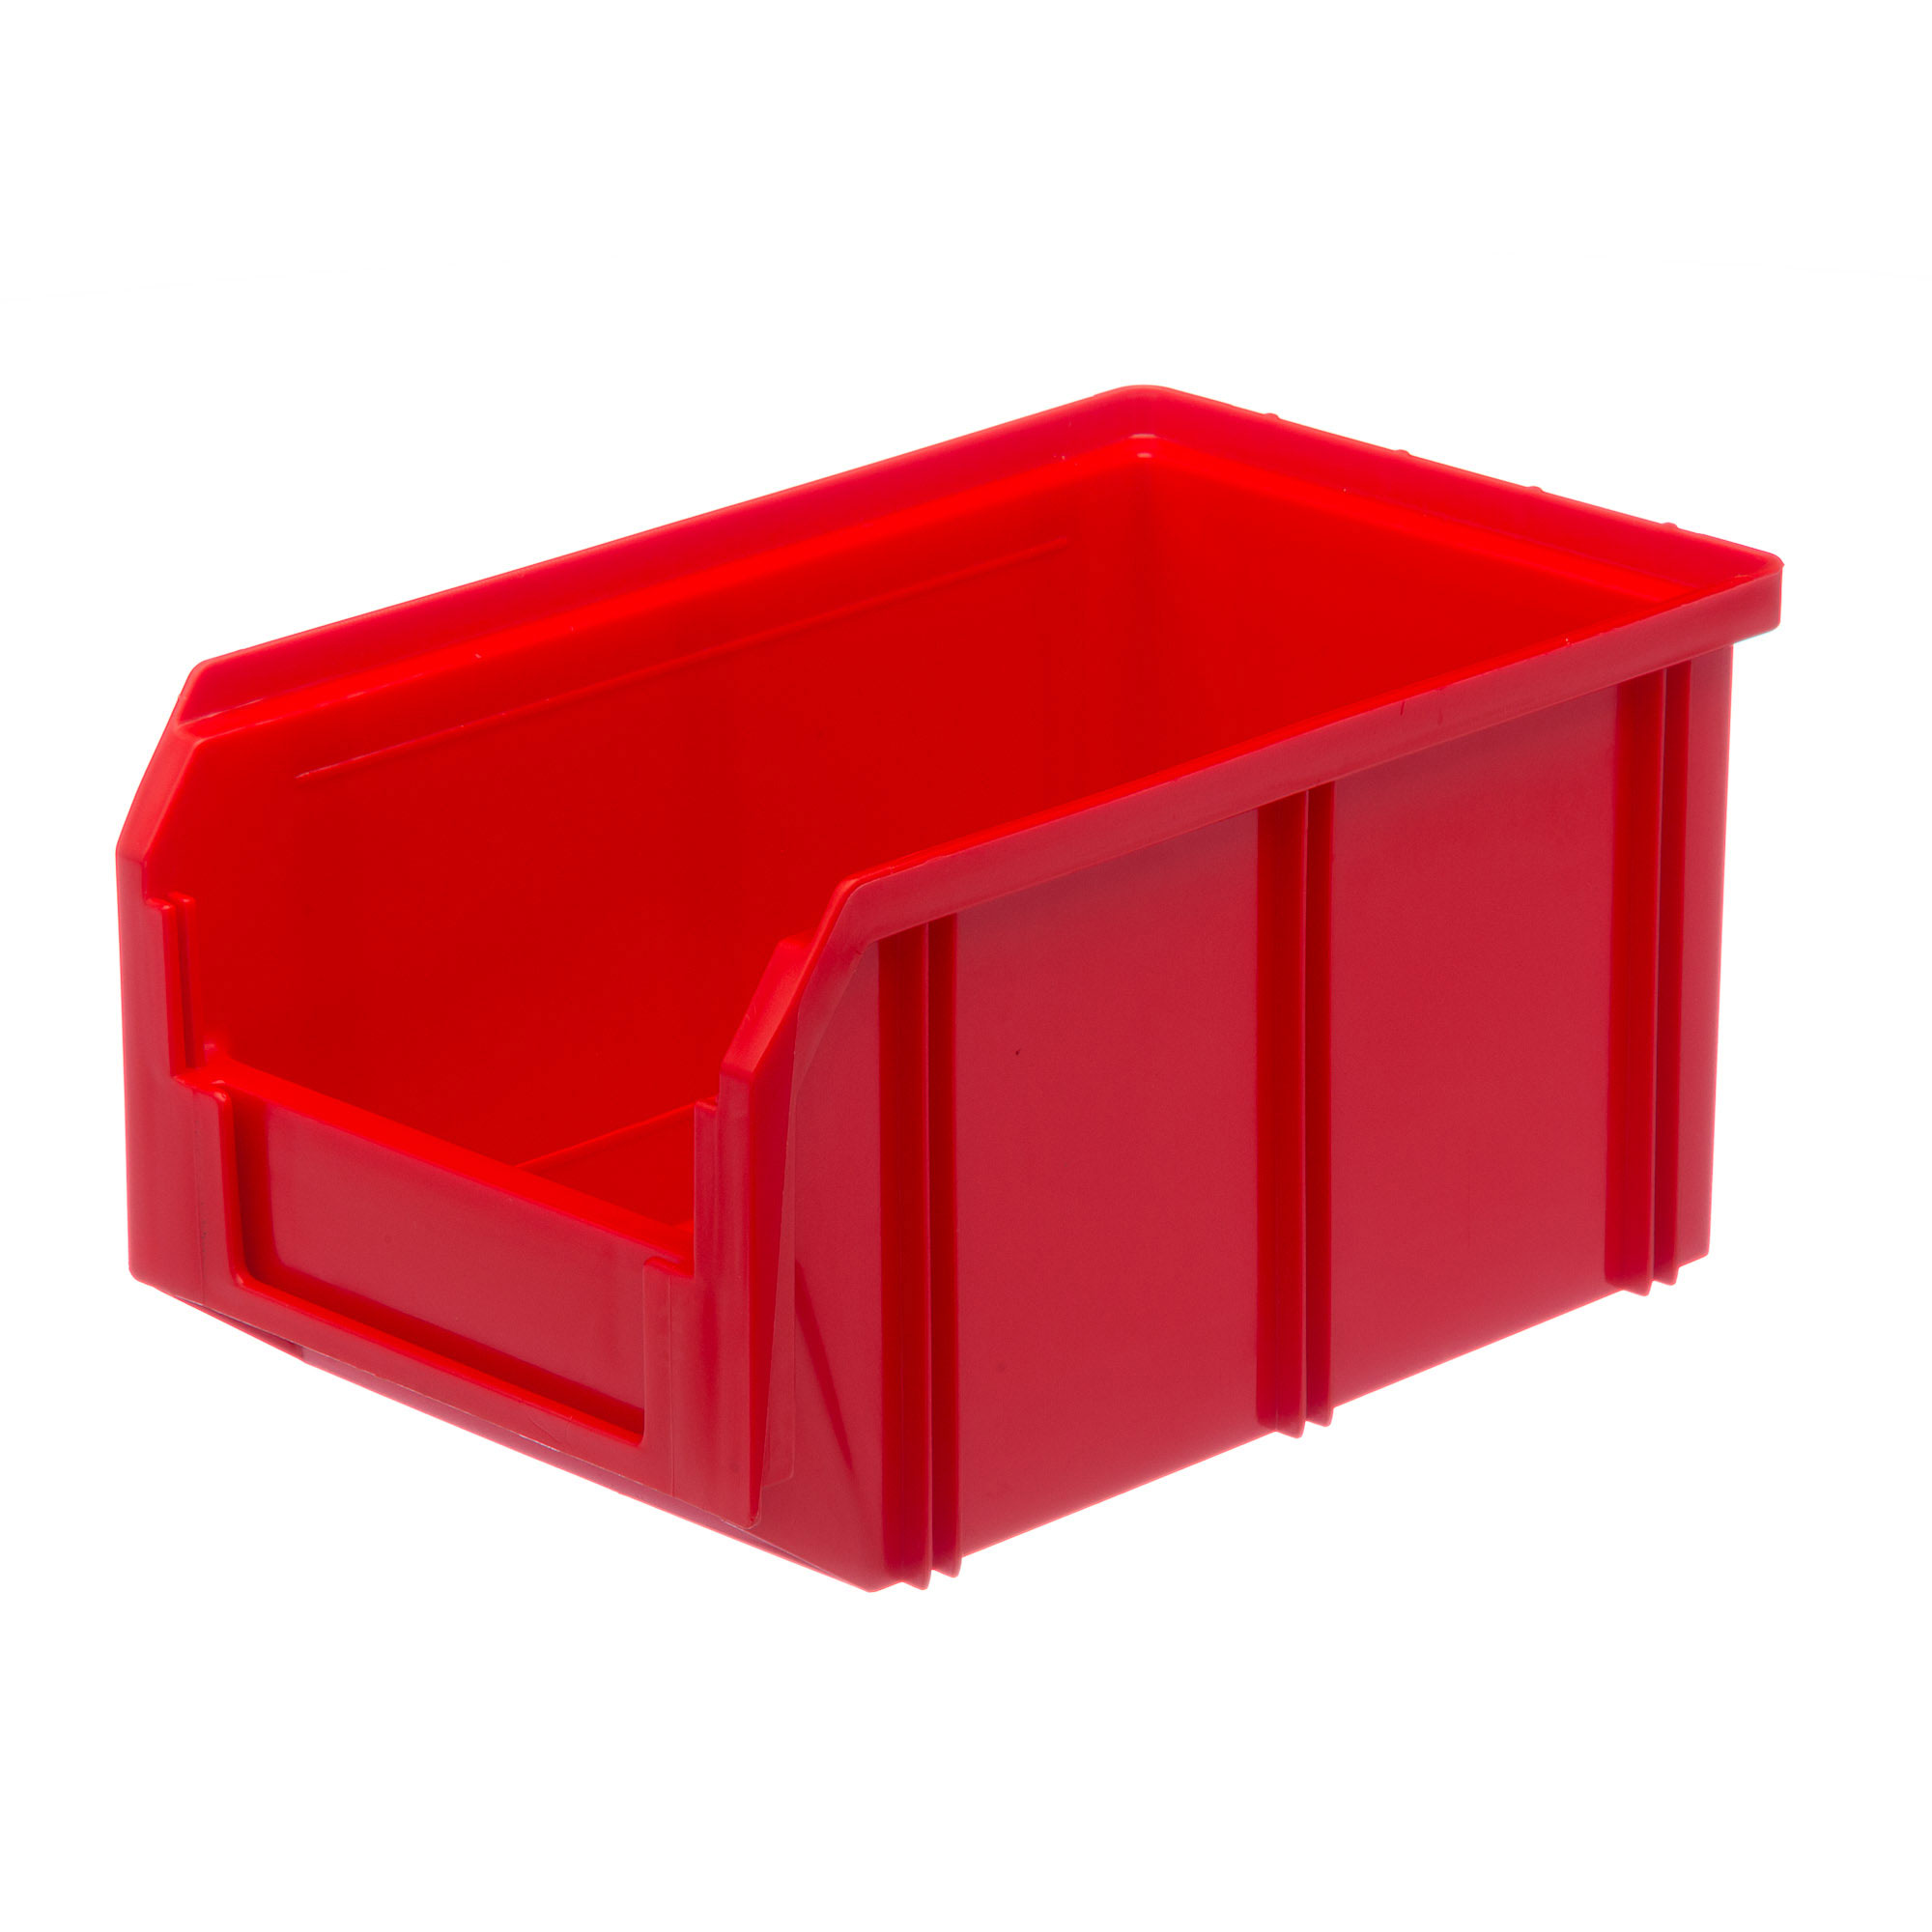 Пластиковый ящик Стелла-техник V-2-красный 234х149х120мм, 3,8 литра нагрудник для кормления пластиковый с карманом красный